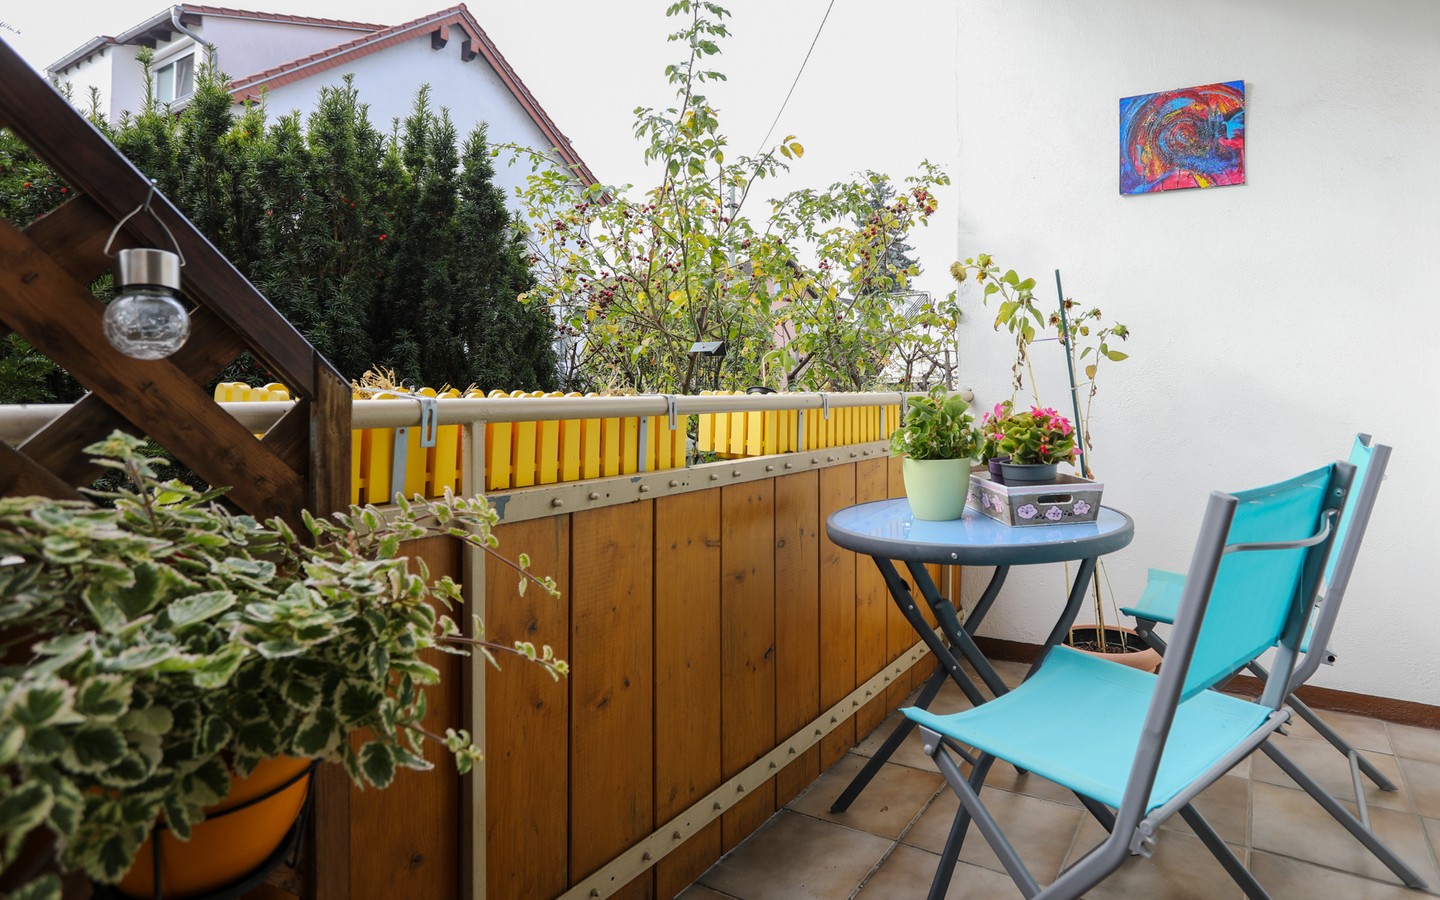 Balkon EG - Eppelheim: MFH auf großem Erbpachtgrundstück in 
familienfreundlicher Wohnlage zur flexiblen Nutzung